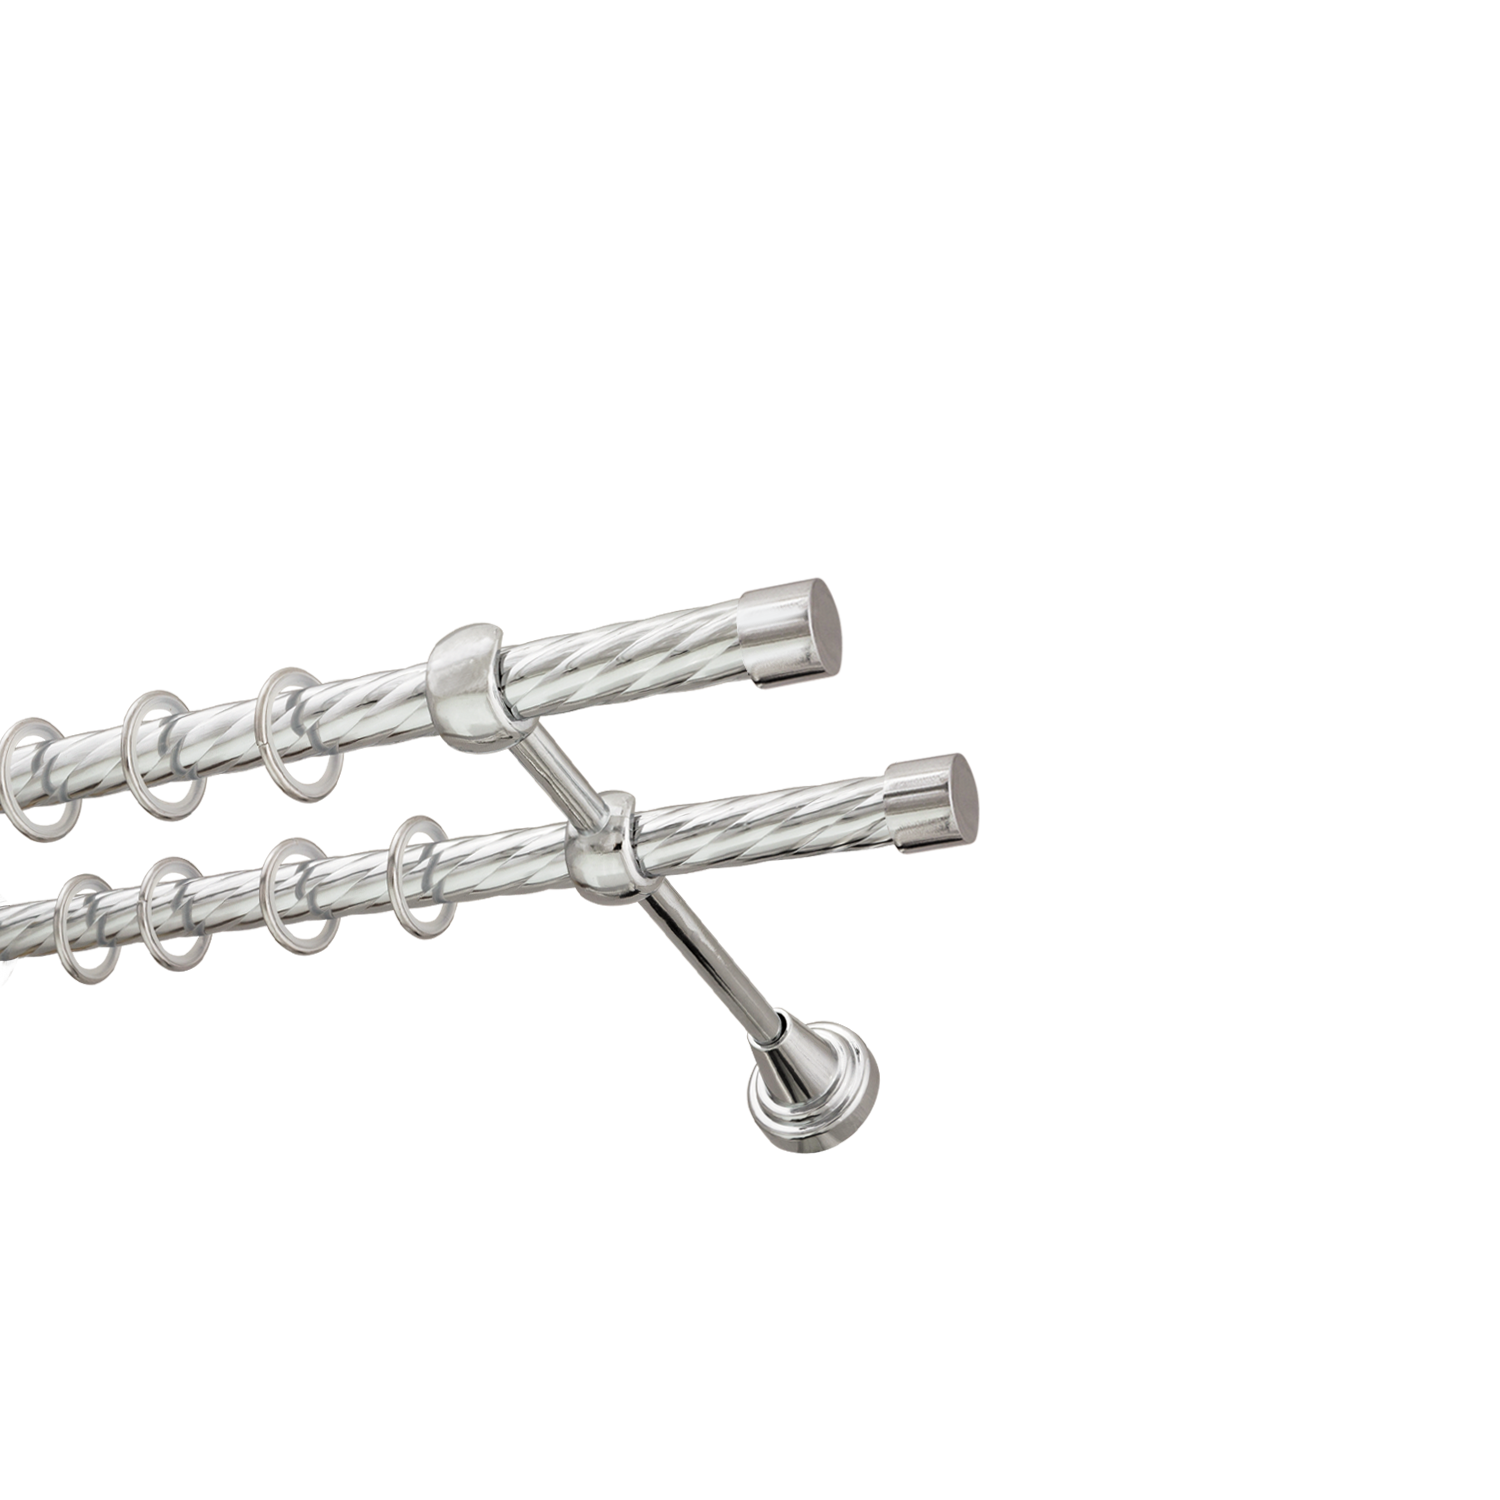 Металлический карниз для штор Заглушка, двухрядный 16/16 мм, серебро, витая штанга, длина 160 см